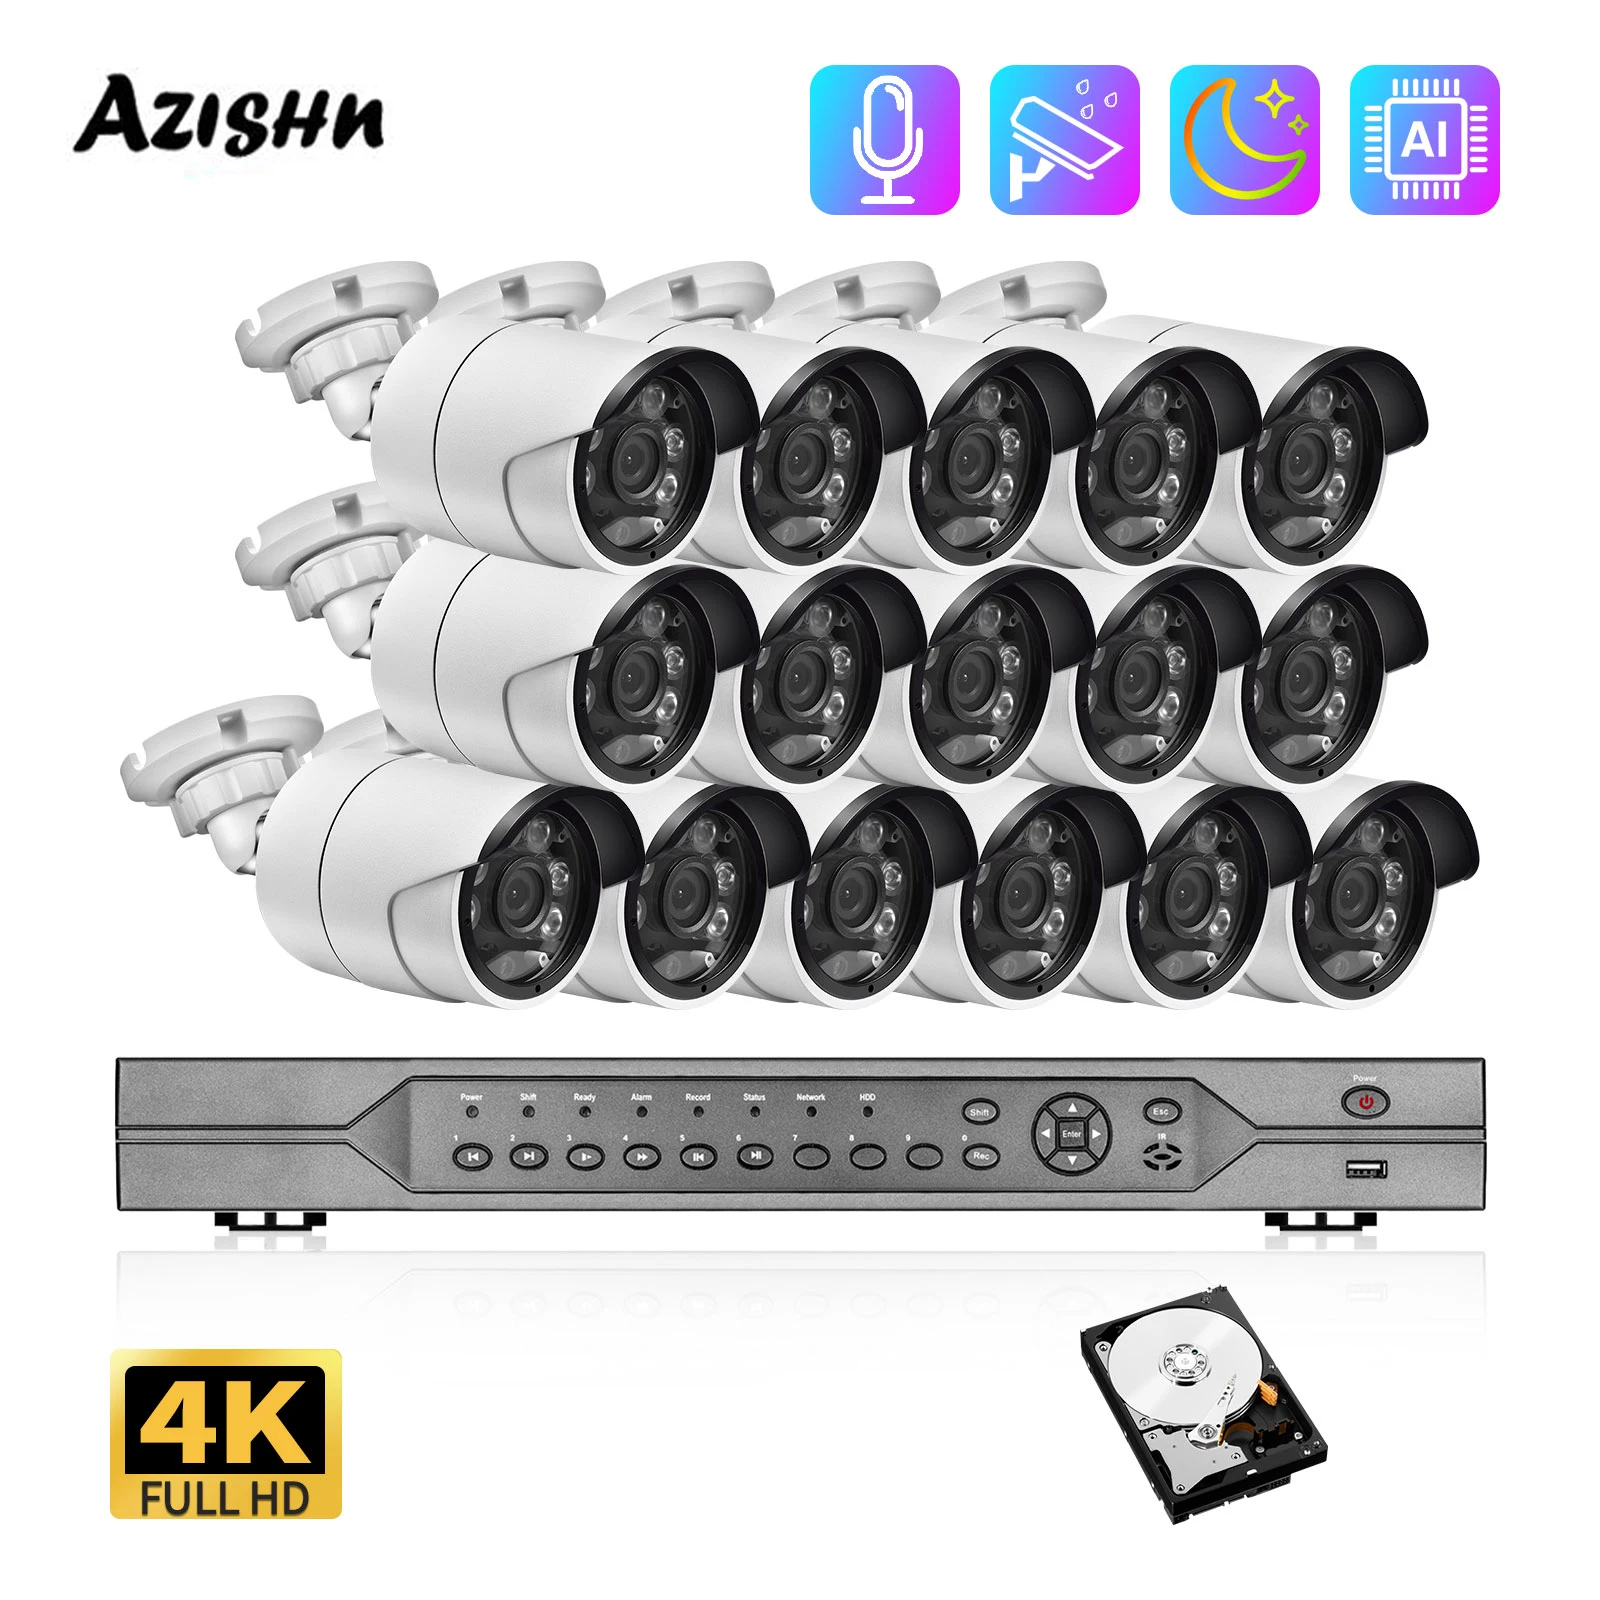 

Комплект видеорегистратора AZISHN, 16 каналов, 4K, 8 Мп, POE, H.265, IP-камера системы видеонаблюдения, цветное ночное видение, аудио, обнаружение людей, ...